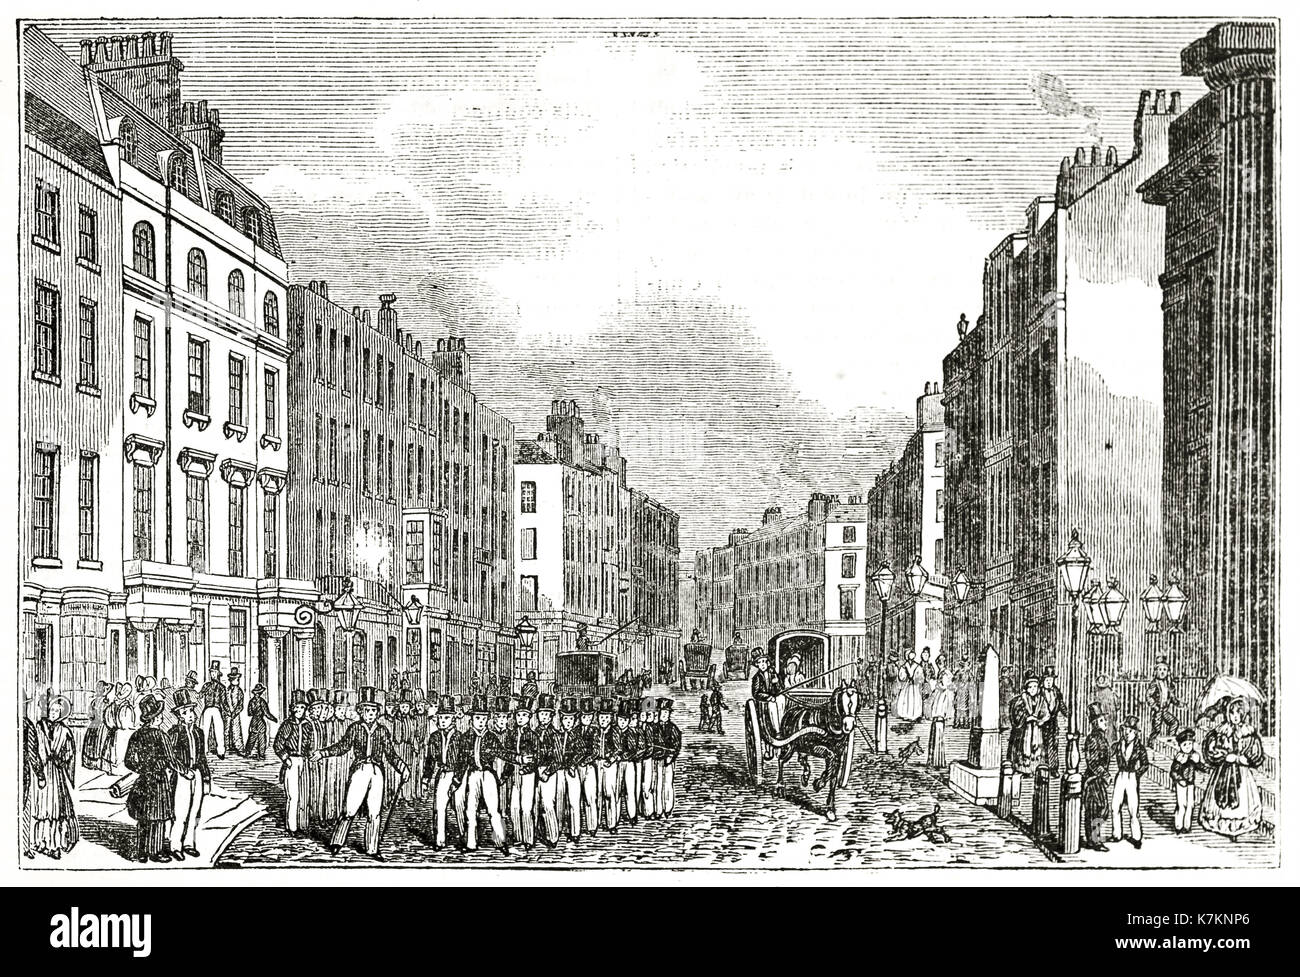 Vecchio vista di Bow Street, Londra. Da autore non identificato, publ. su Penny Magazine, London, 1837 Foto Stock